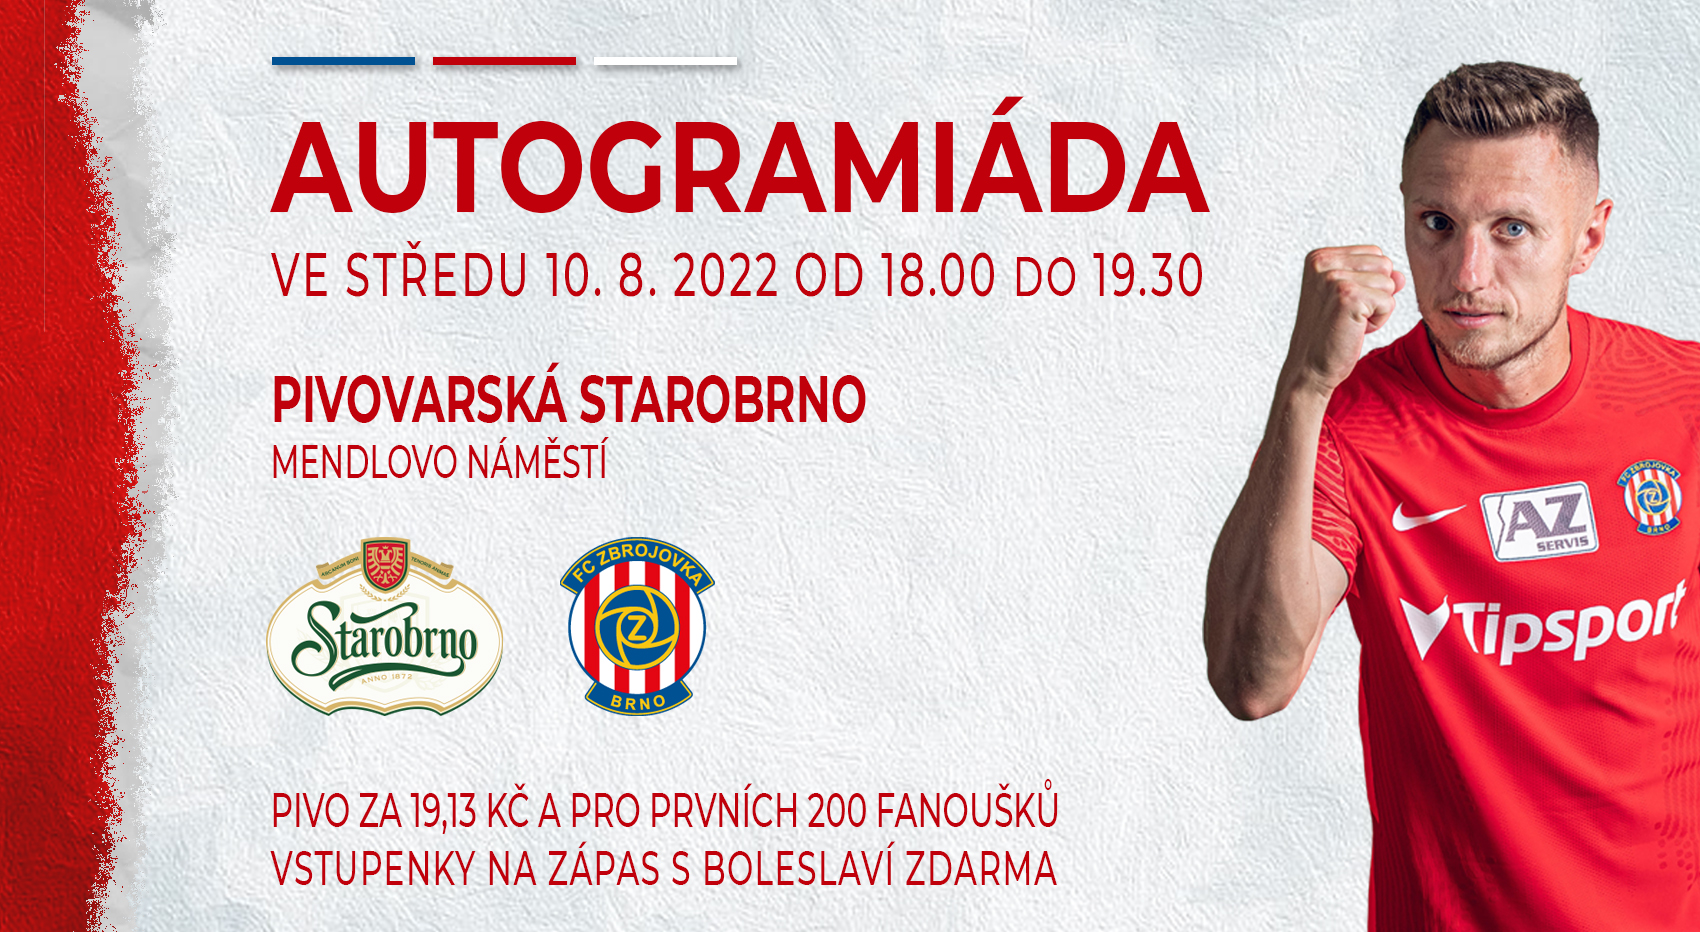 Ve středu 10.8. proběhne velká autogramiáda v Pivovaru Starobrno!